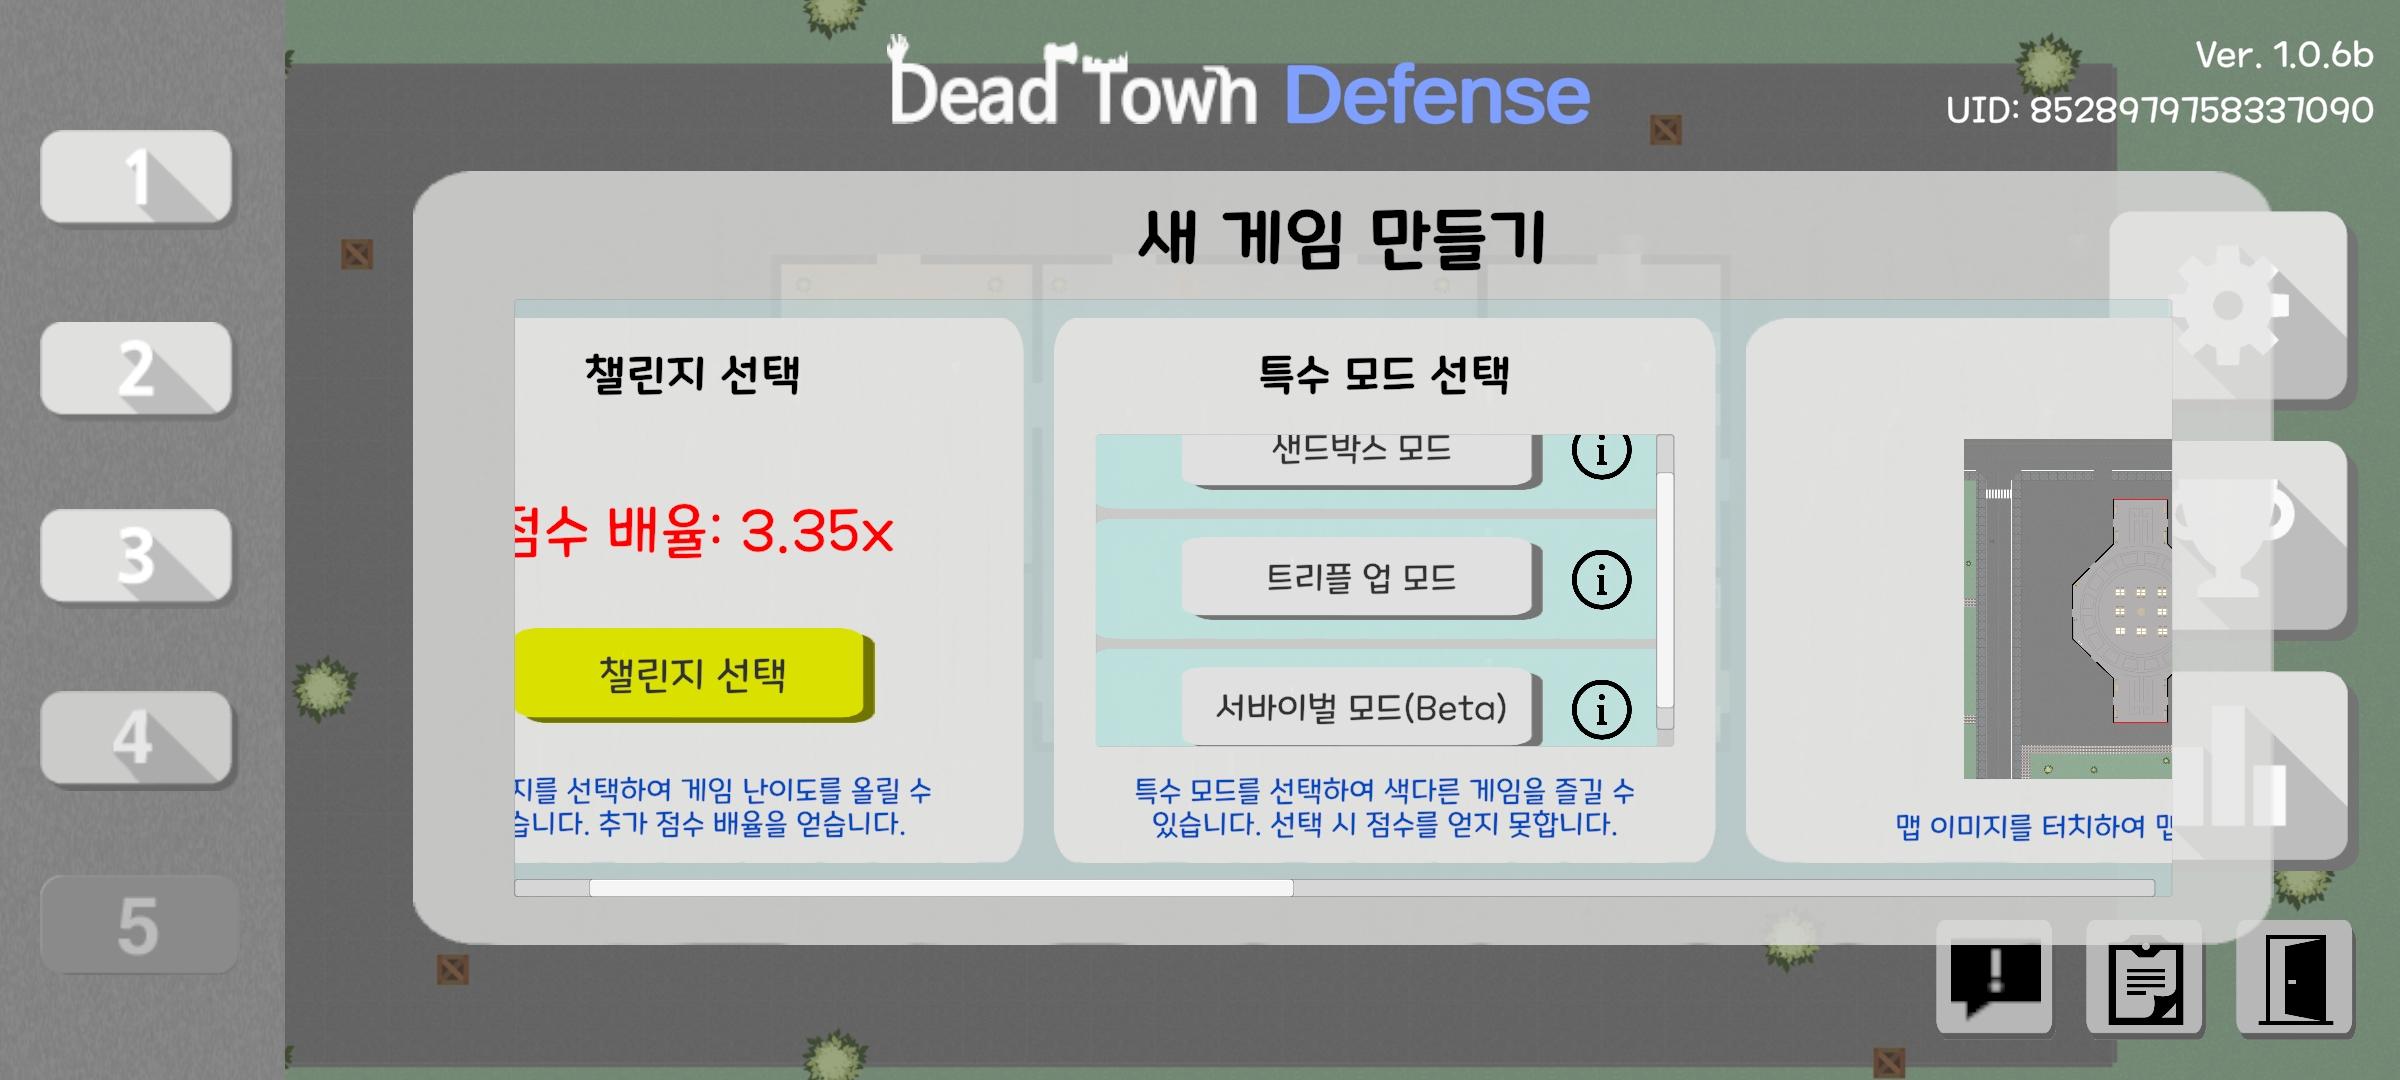 데드 타운 디펜스 [Dead Town Defense] 게임 스크린 샷